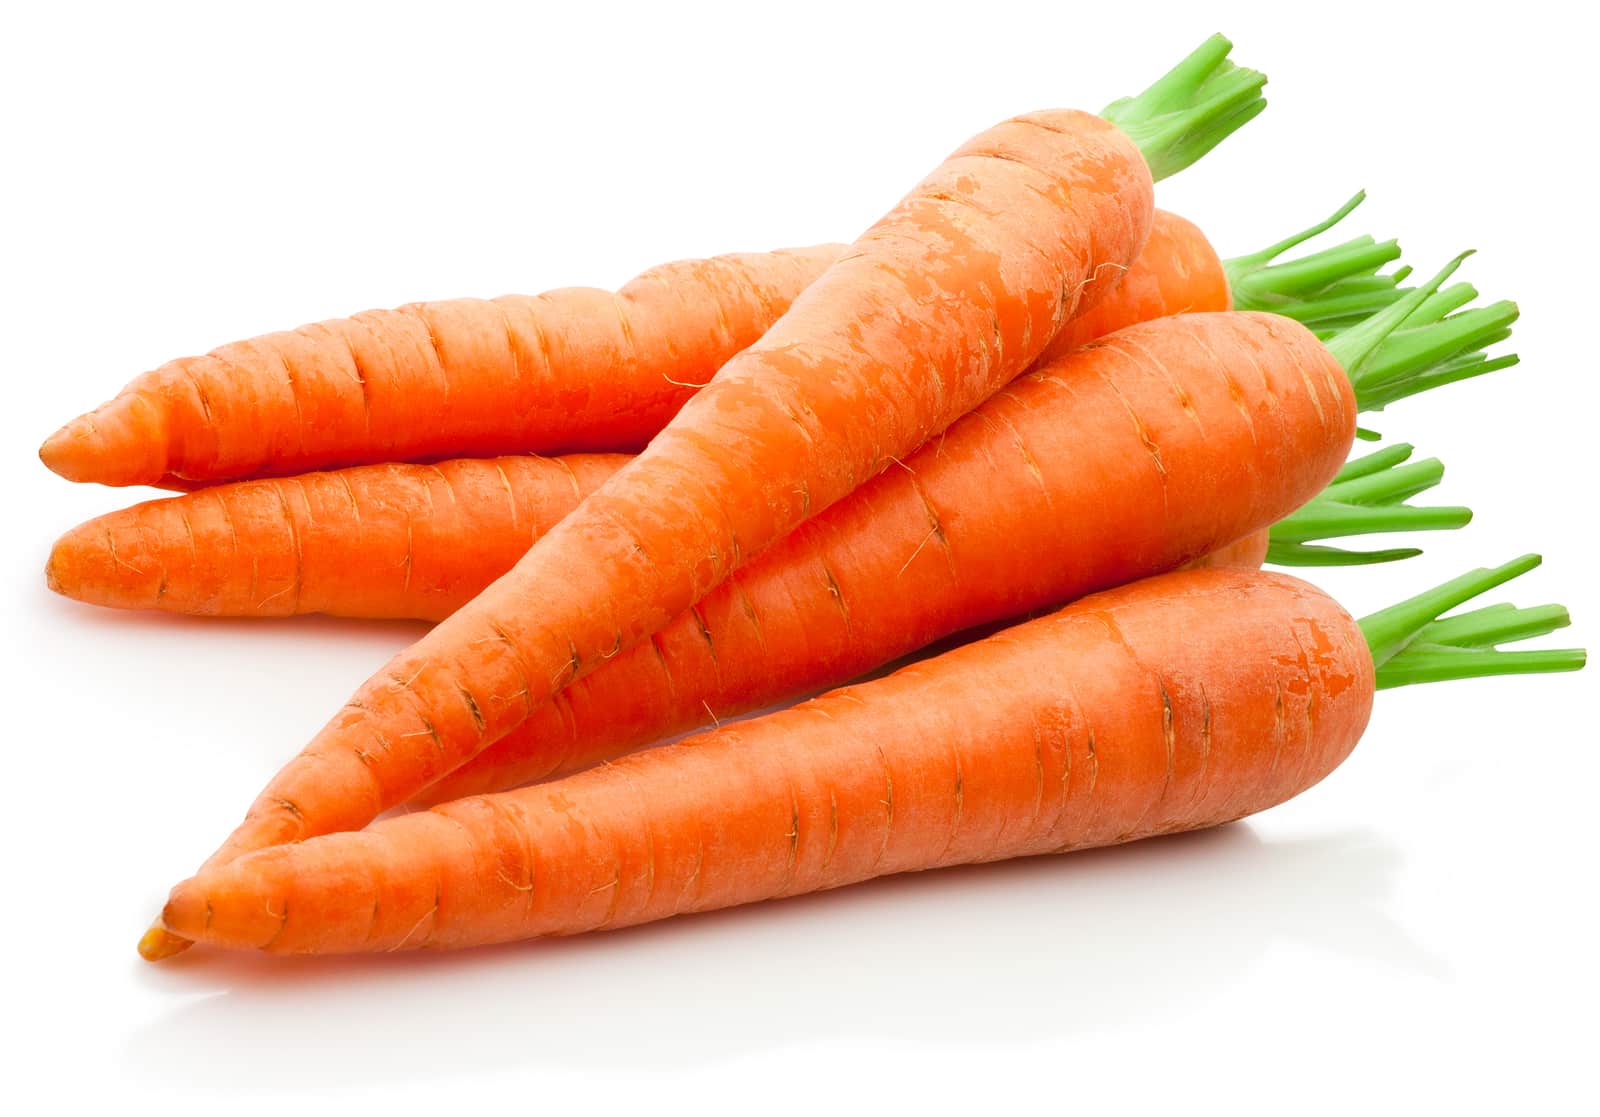 Cuál es el color original de la zanahoria